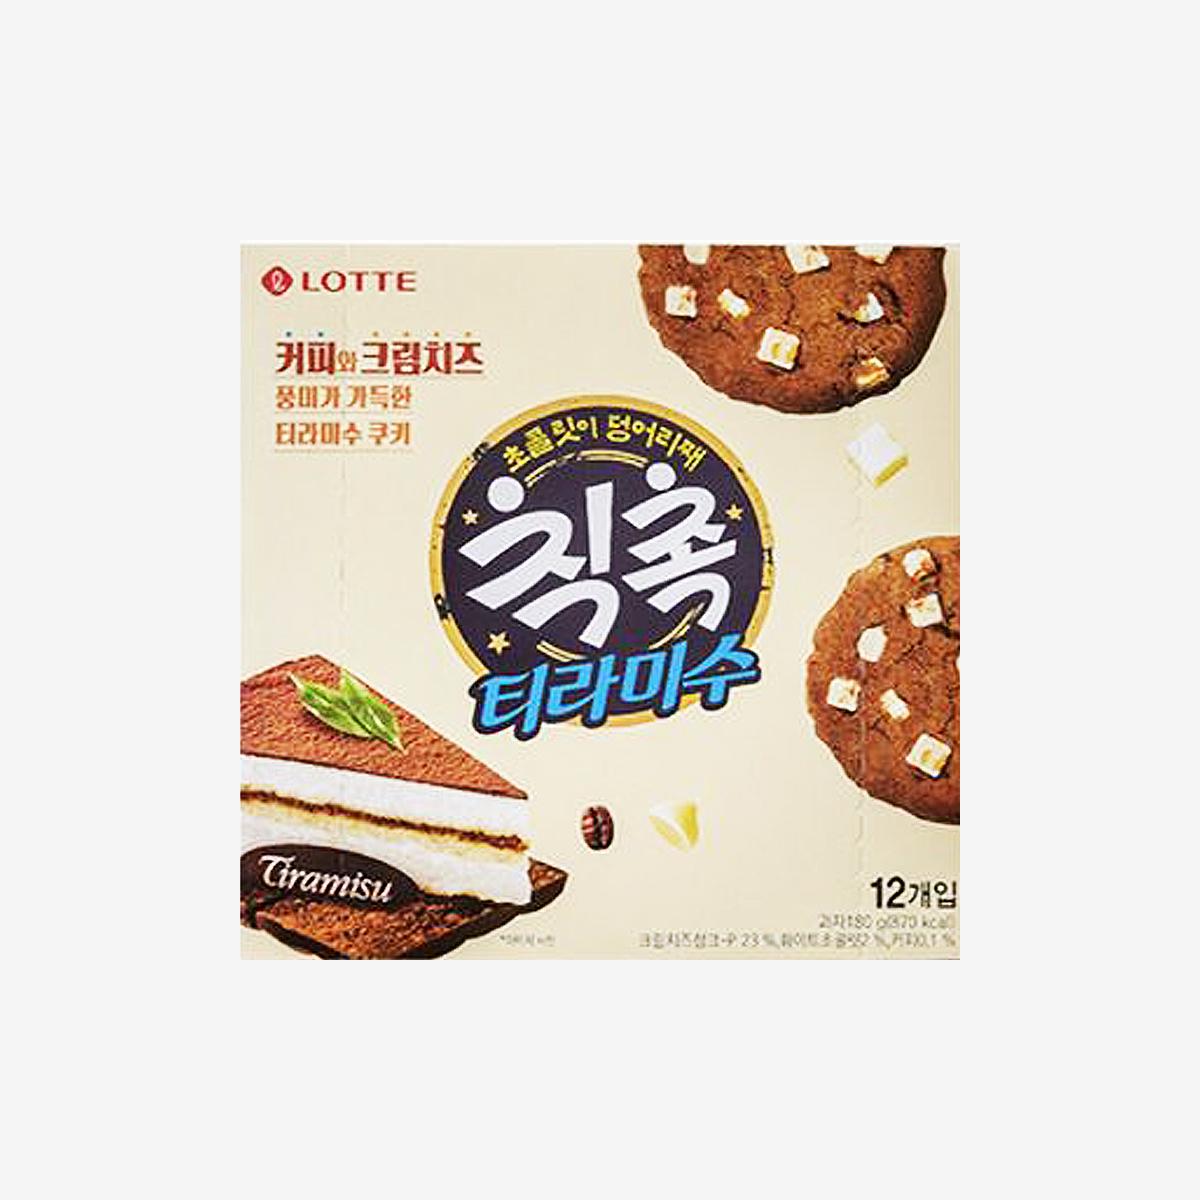 korean brand lotte's chic choc tiramisu flavor box